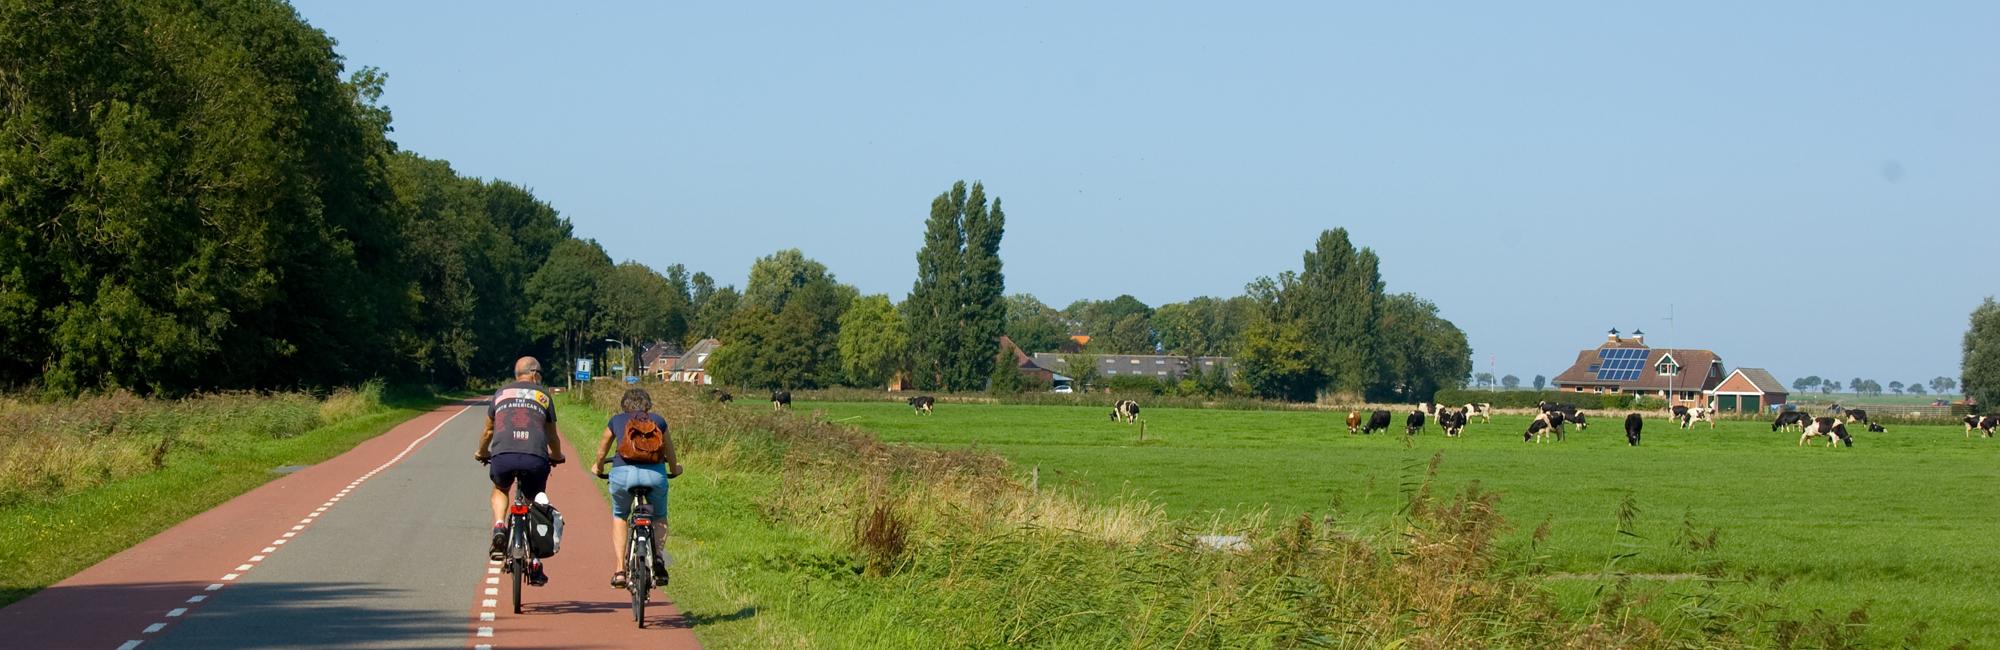 Groningen Pieterpad - etappe 1